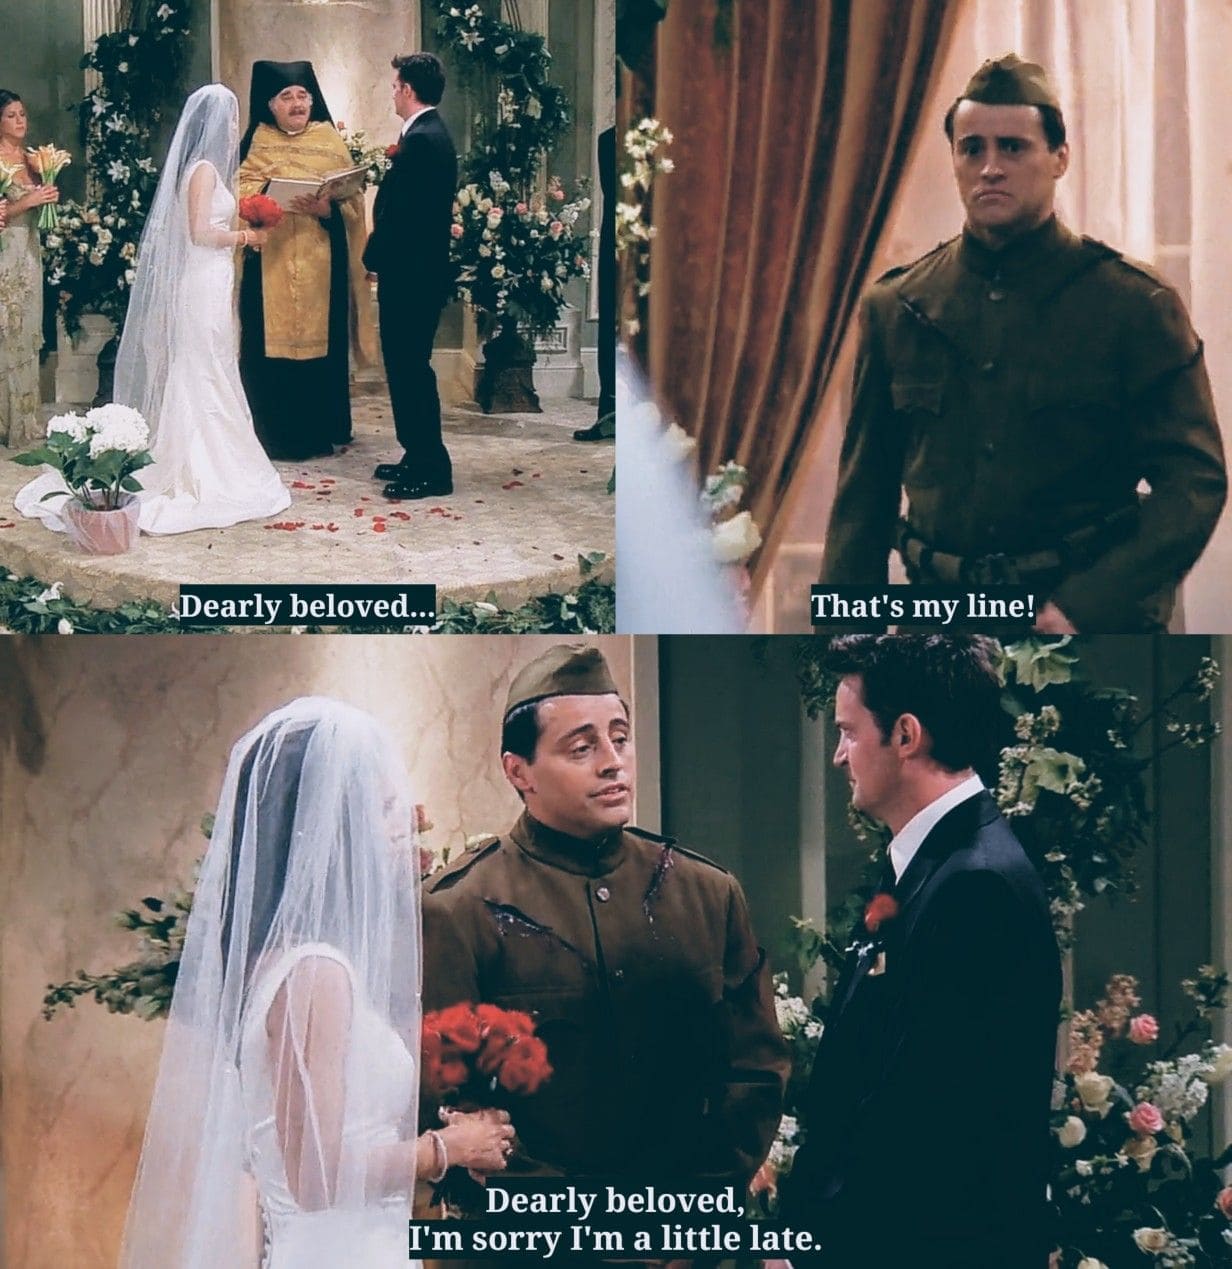 ازدواج مانیکا و چندلر از بهترین اتفاقات در قسمت های سریال فرندز است